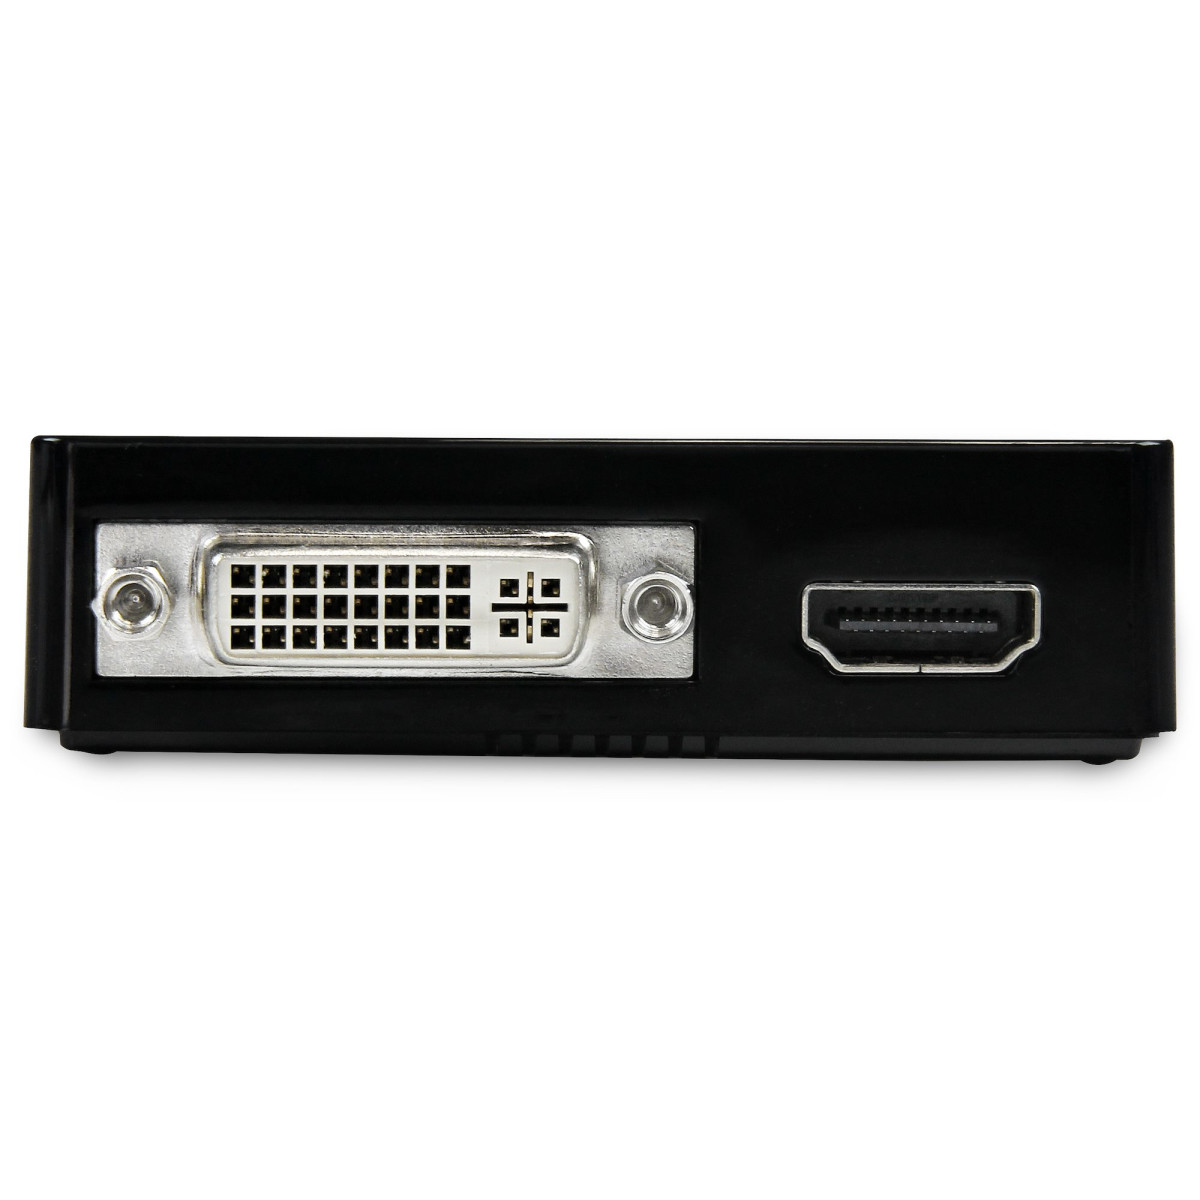 USB 3.0-HDMI and DVI Ext Video Card Adpt